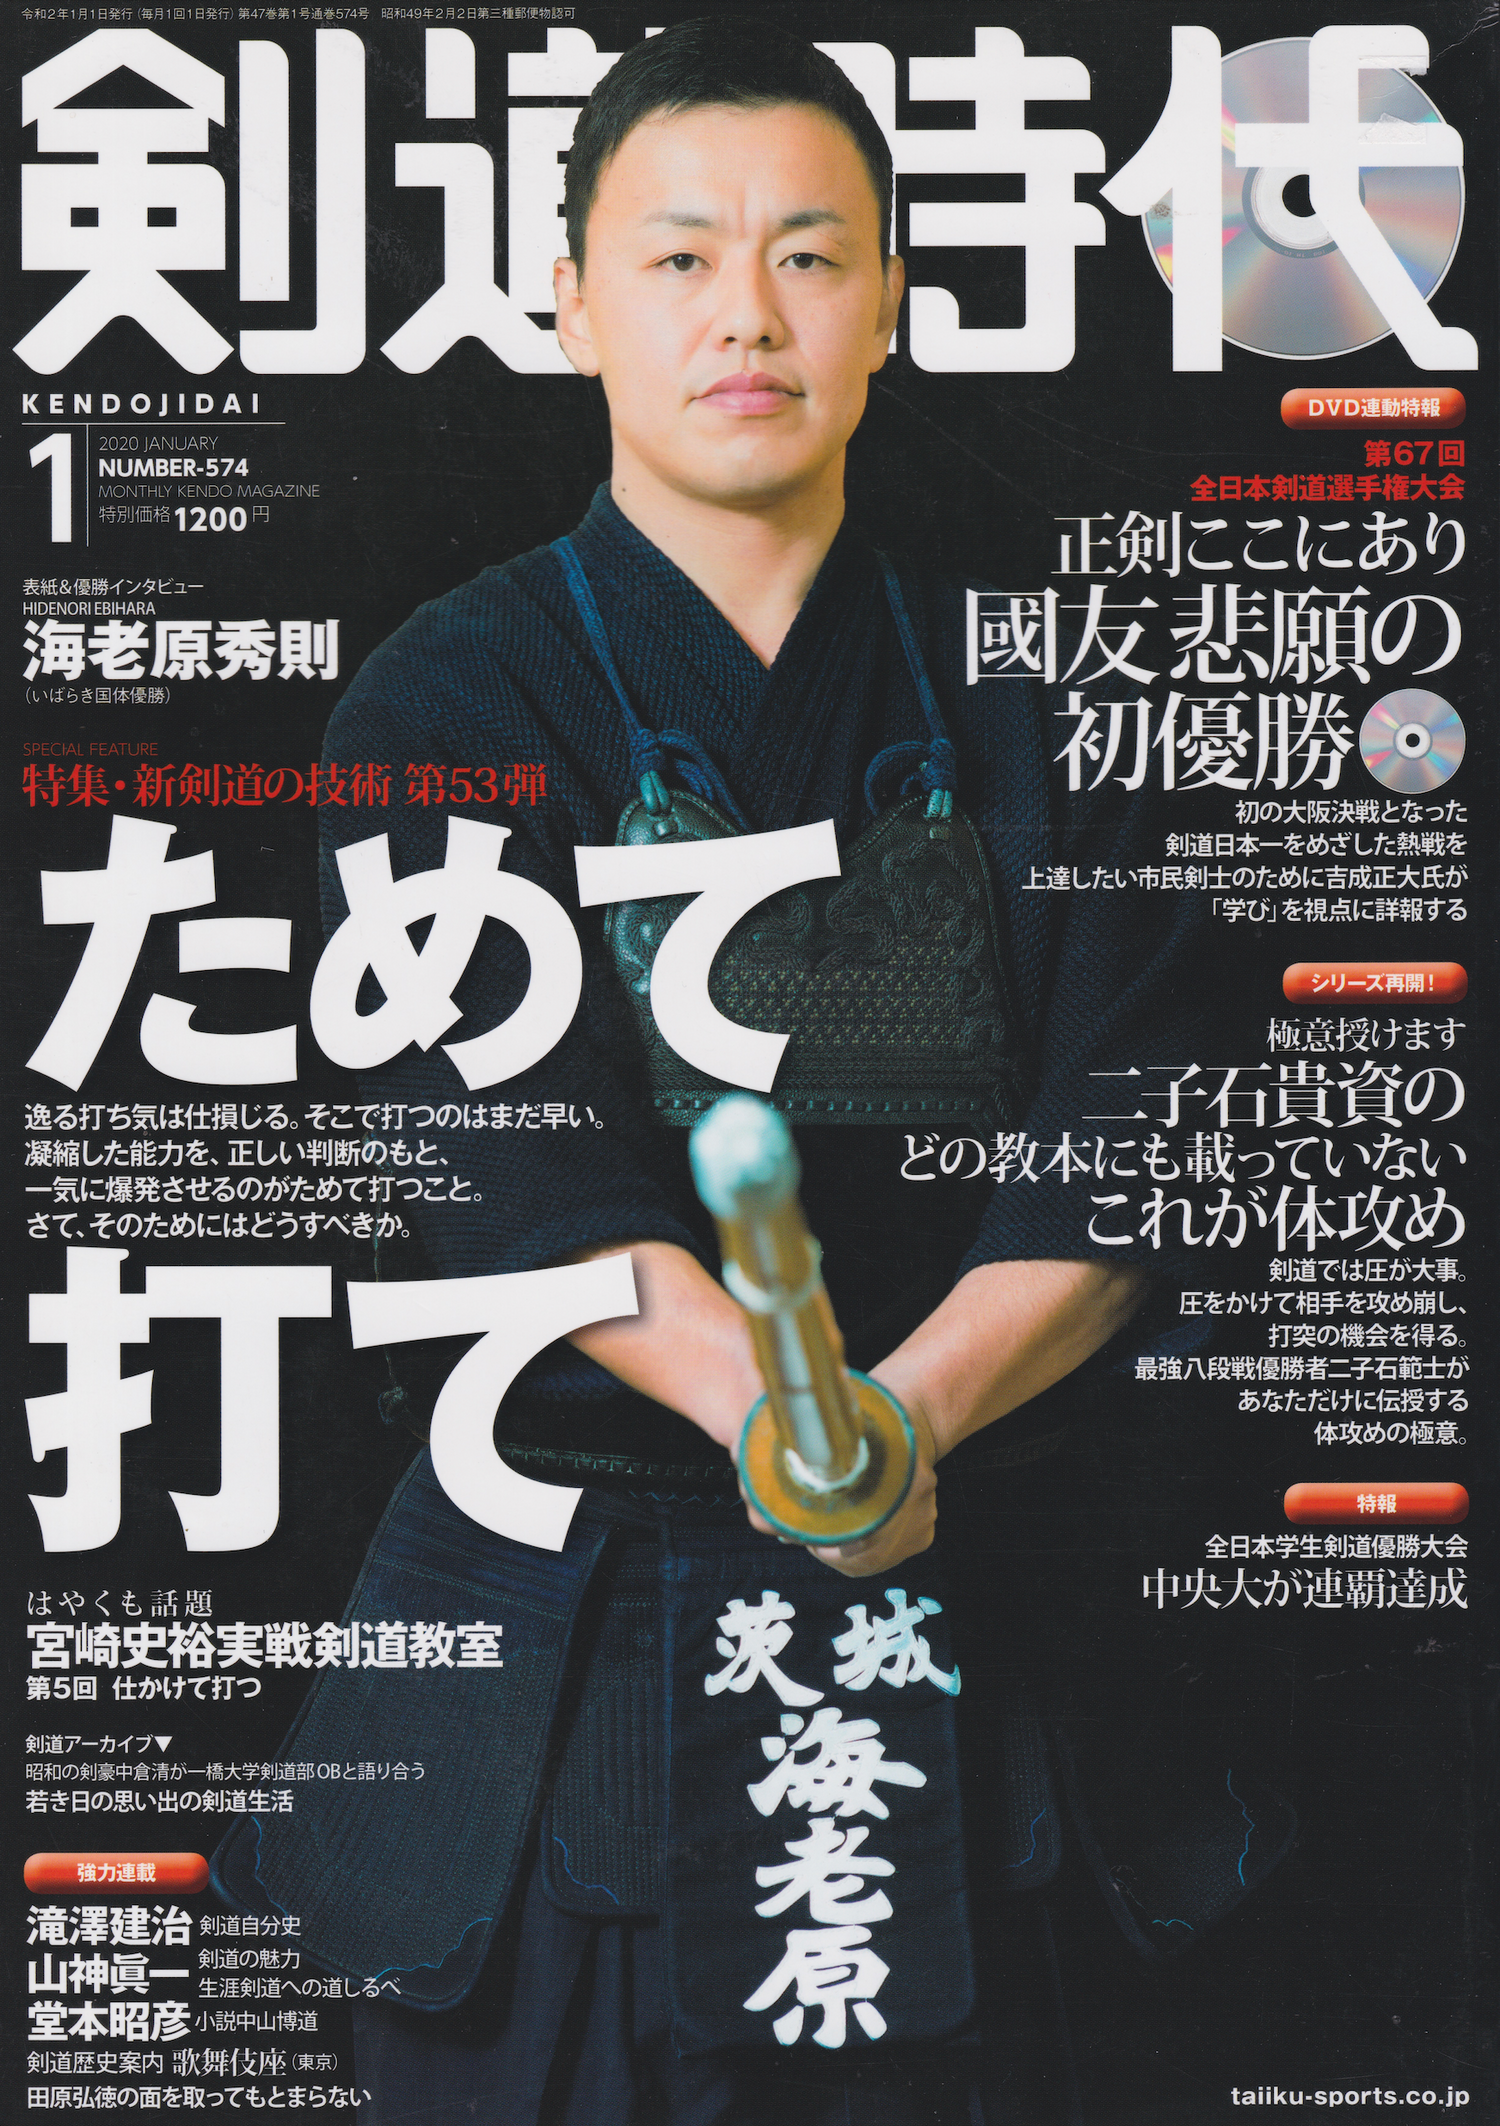 Kendo Jidai Magazine & DVD #574 Jan 2020 (Preowned)